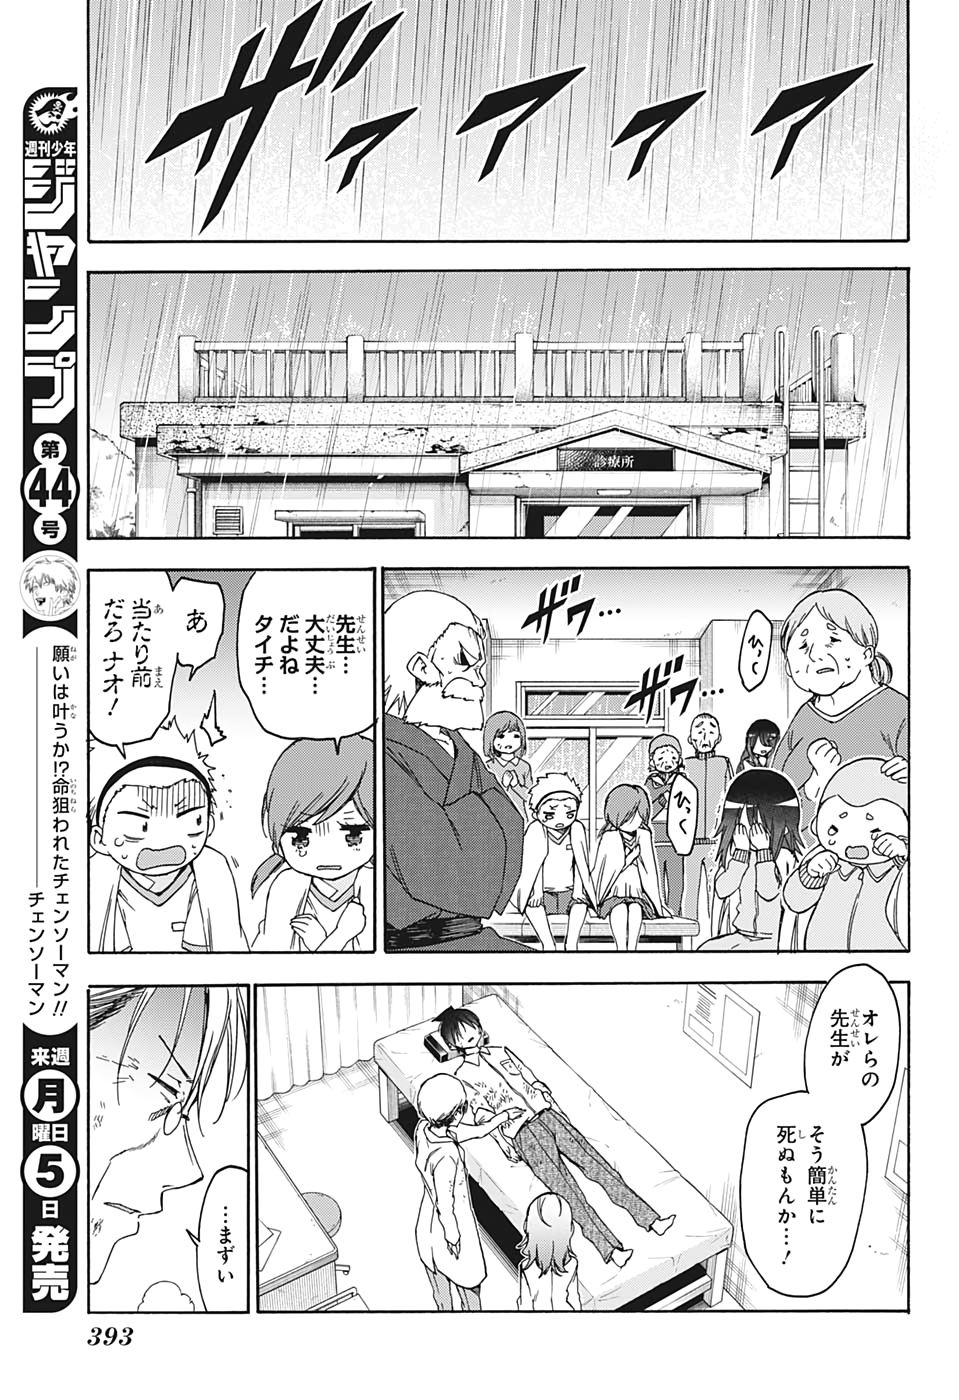 Bokutachi wa Benkyou ga Dekinai - Chapter 175 - Page 13